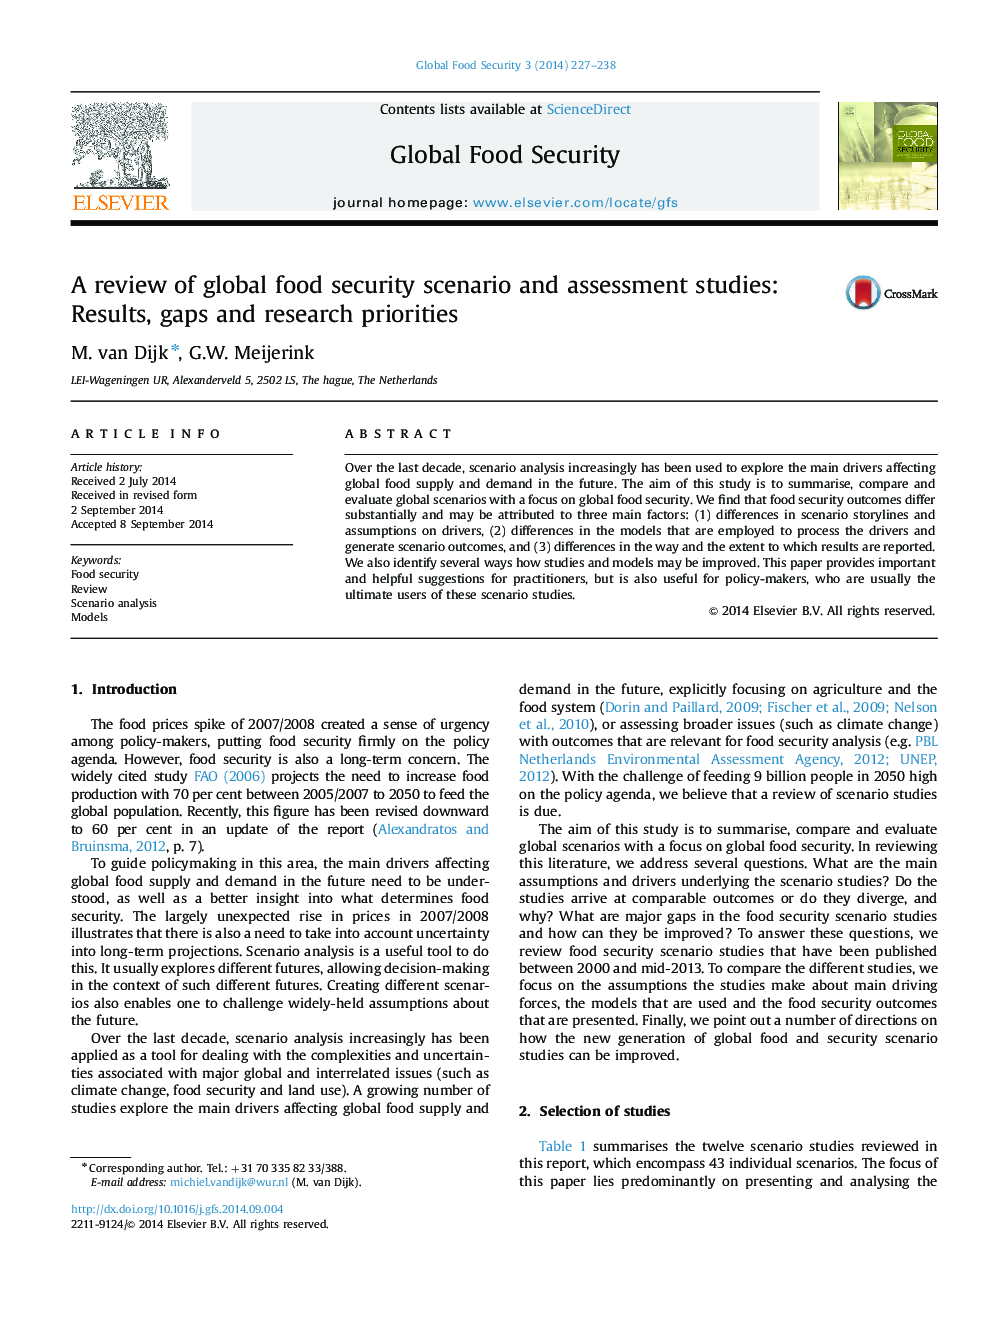 بررسی سناریو امنیت جهانی غذا و مطالعات ارزیابی: نتایج، شکاف ها و اولویت های تحقیق 